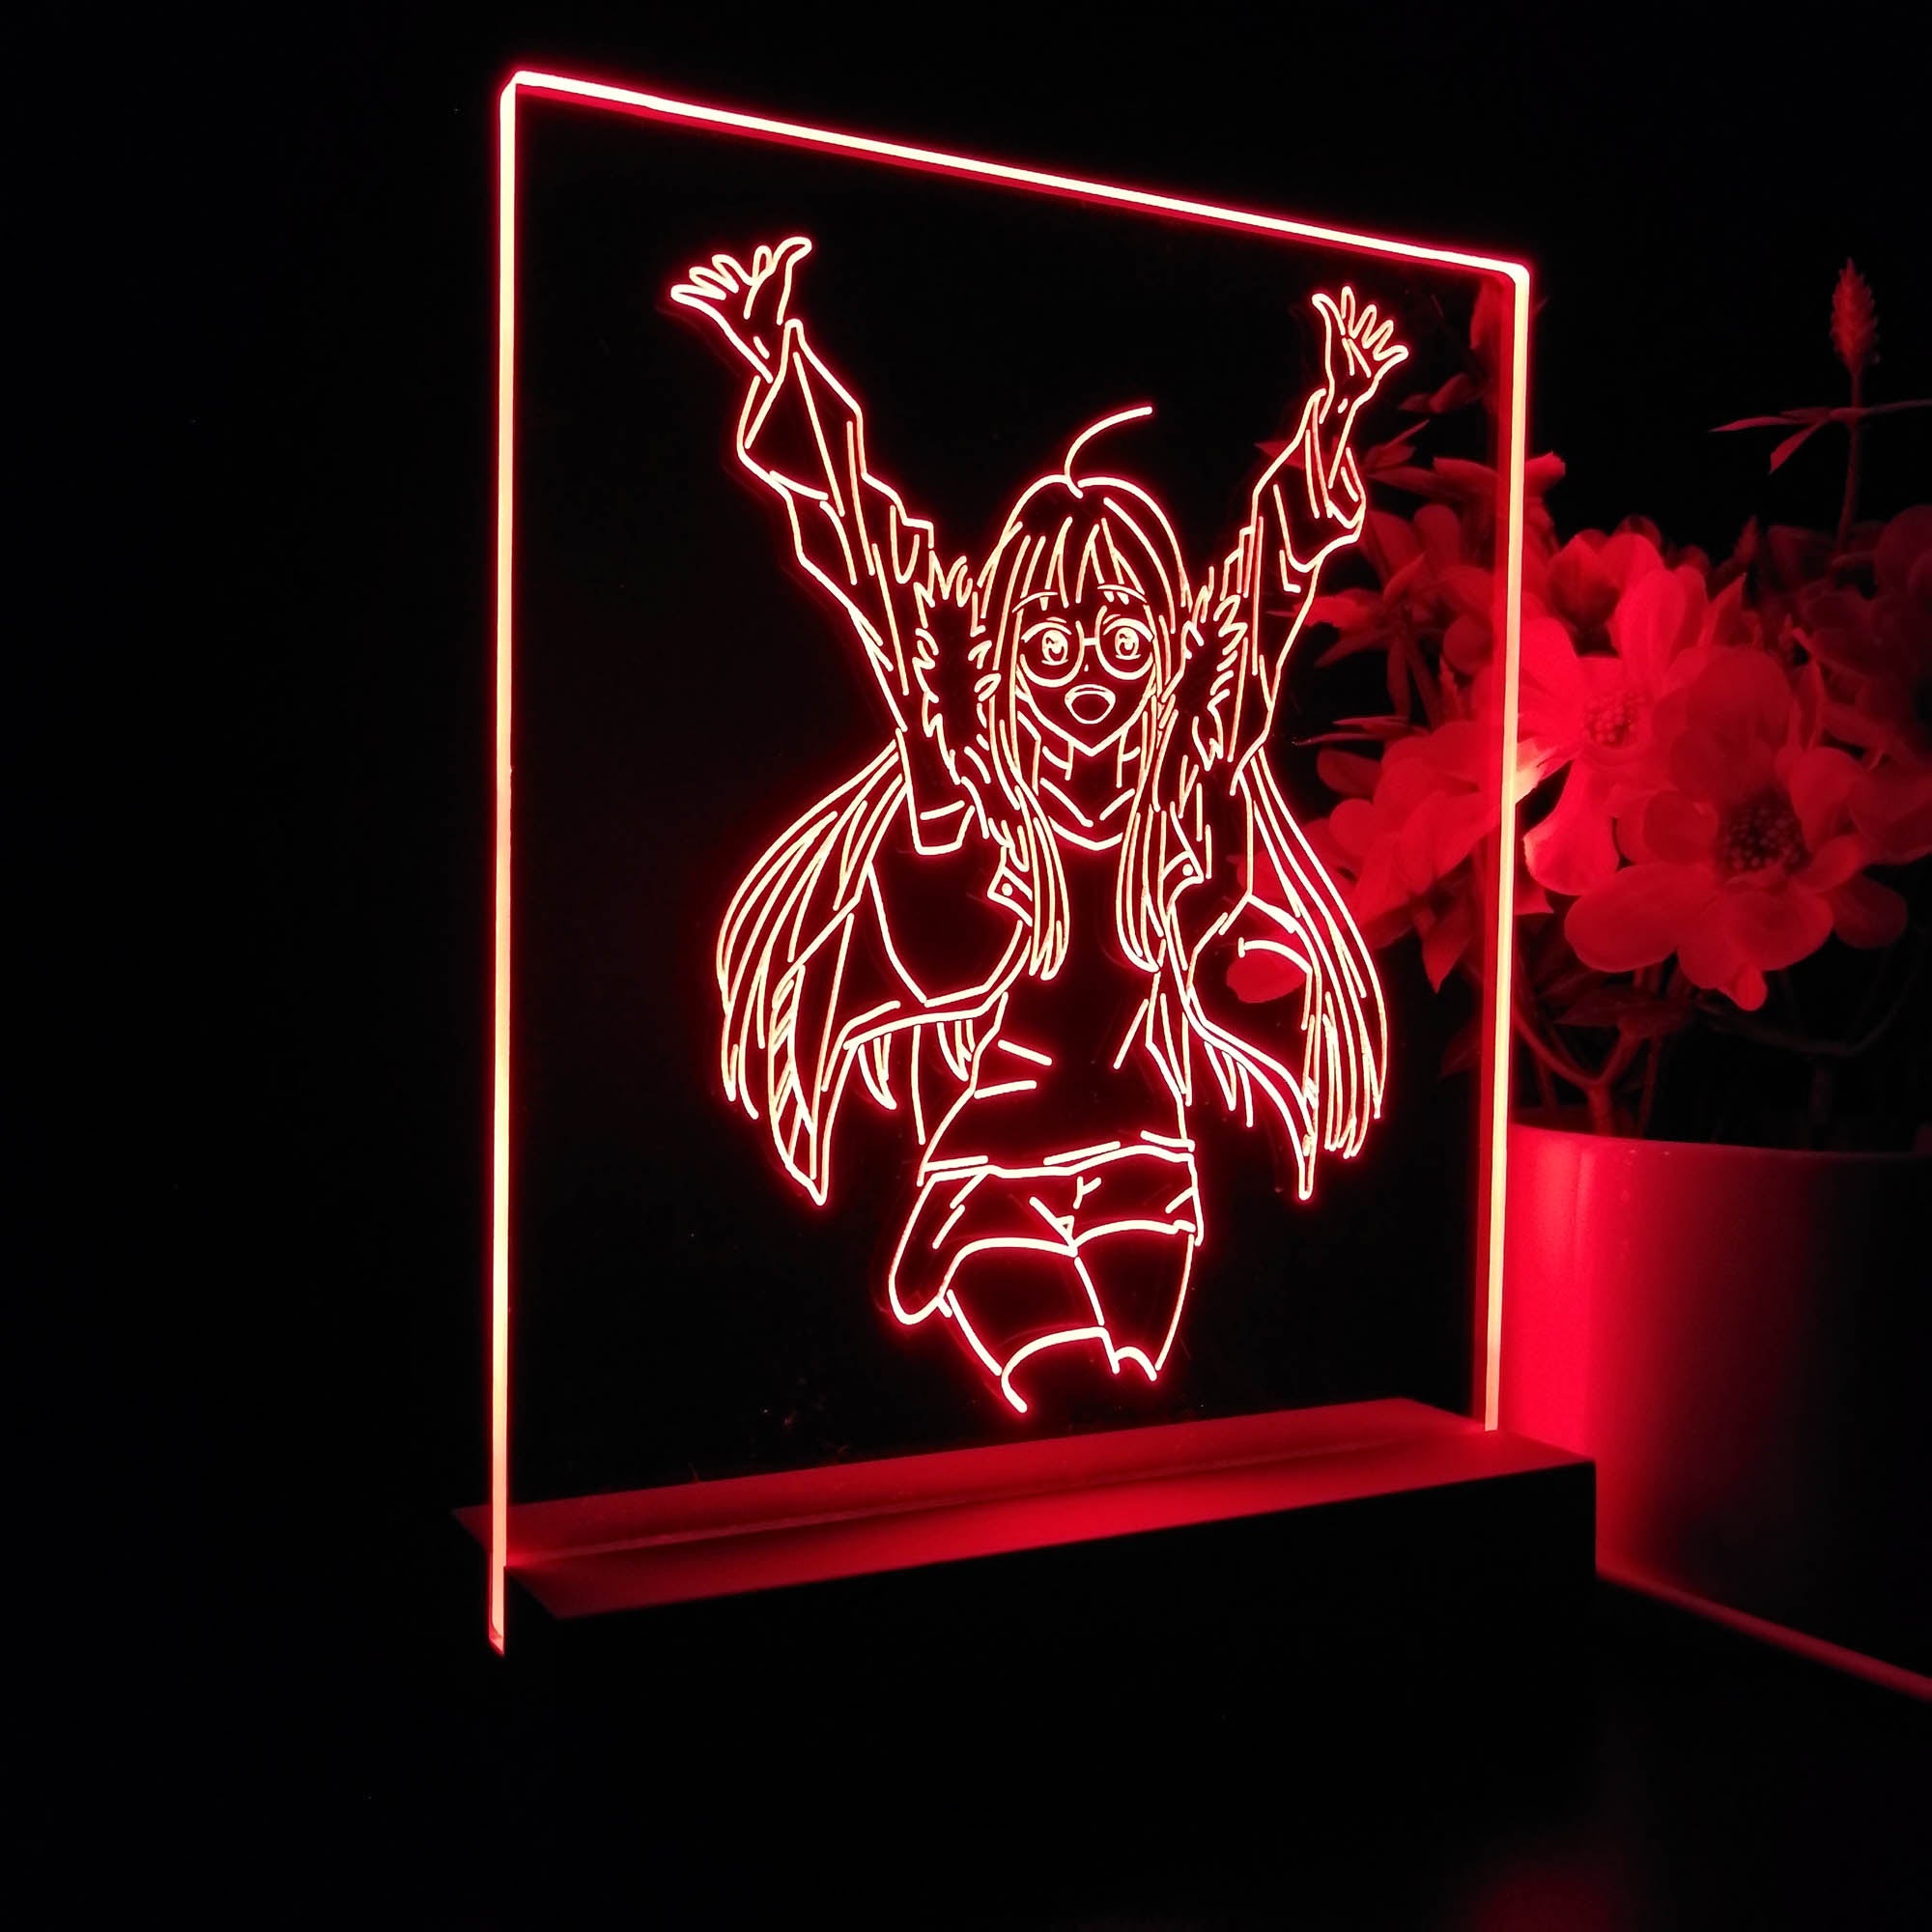 Persona 5 Futaba Sakura Jumping 3D LED Optical Illusion Sleep Night Light Table Lamp